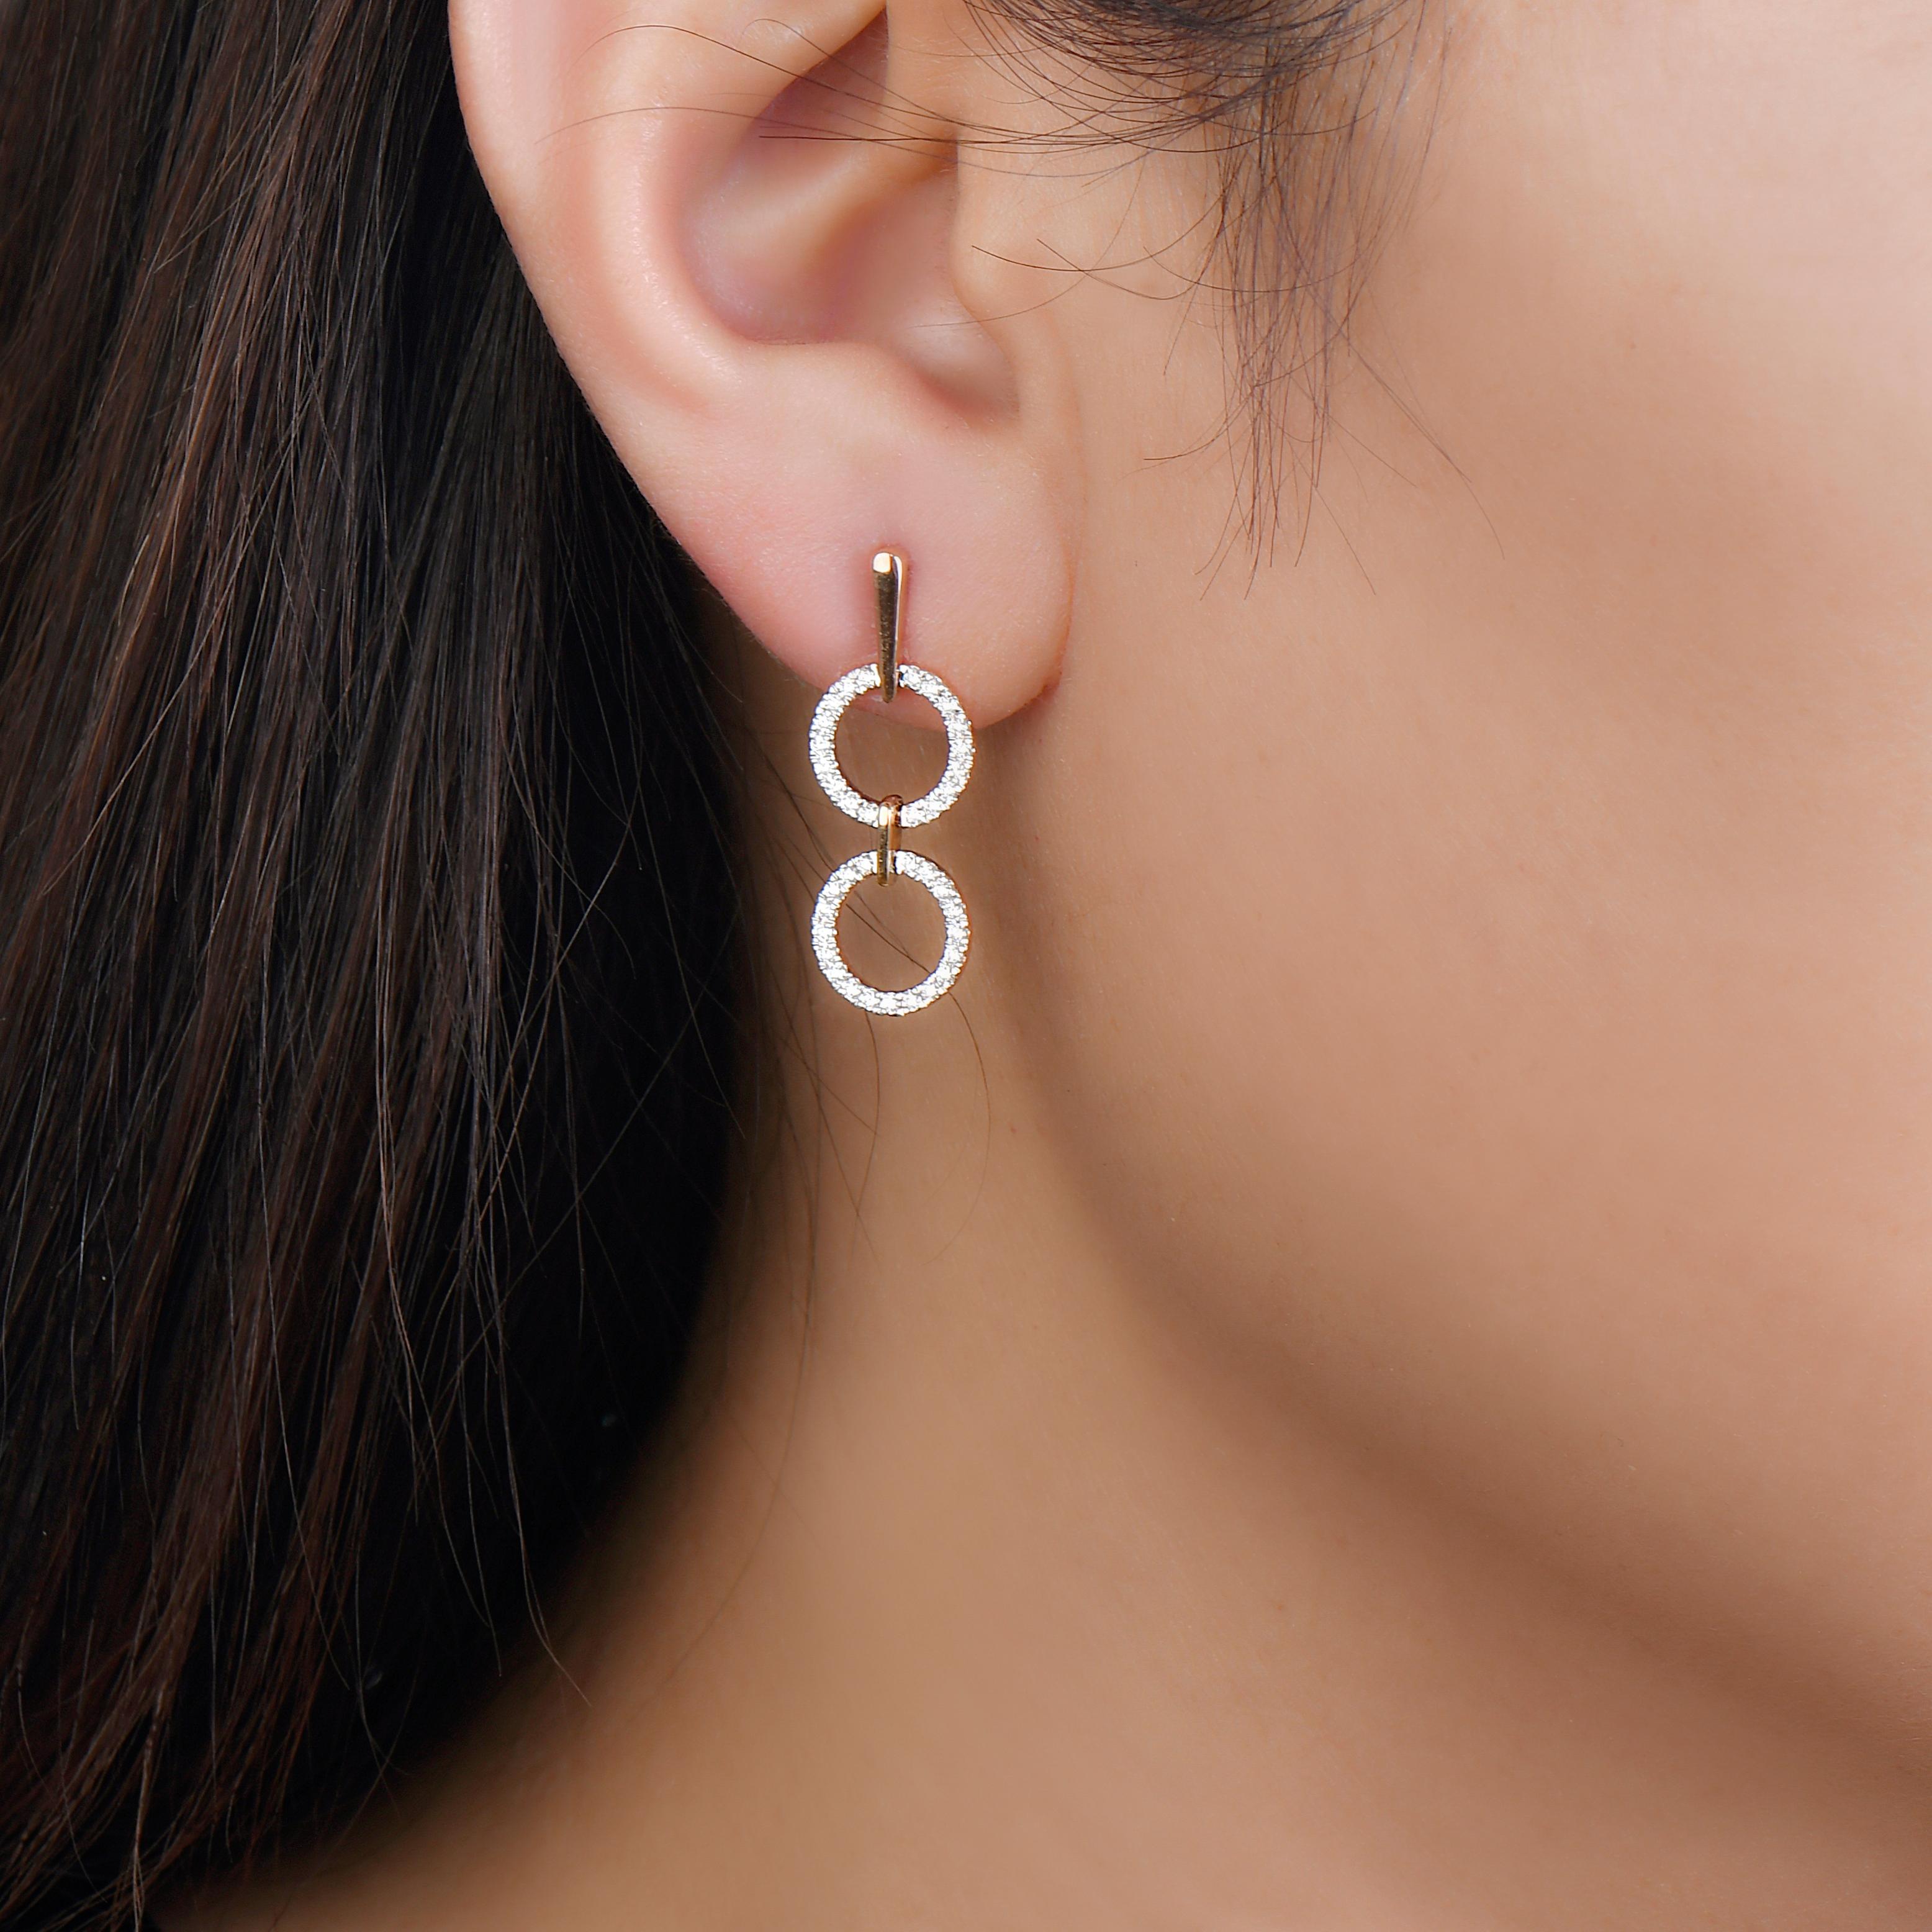 Ces boucles d'oreilles géoartistiques ont une forme différente des boucles d'oreilles pendantes. Elles sont plus faciles à suspendre qu'à accrocher. Cela ne les rend pas moins étonnants. Les boucles d'oreilles pendantes en diamant en or rose 14K